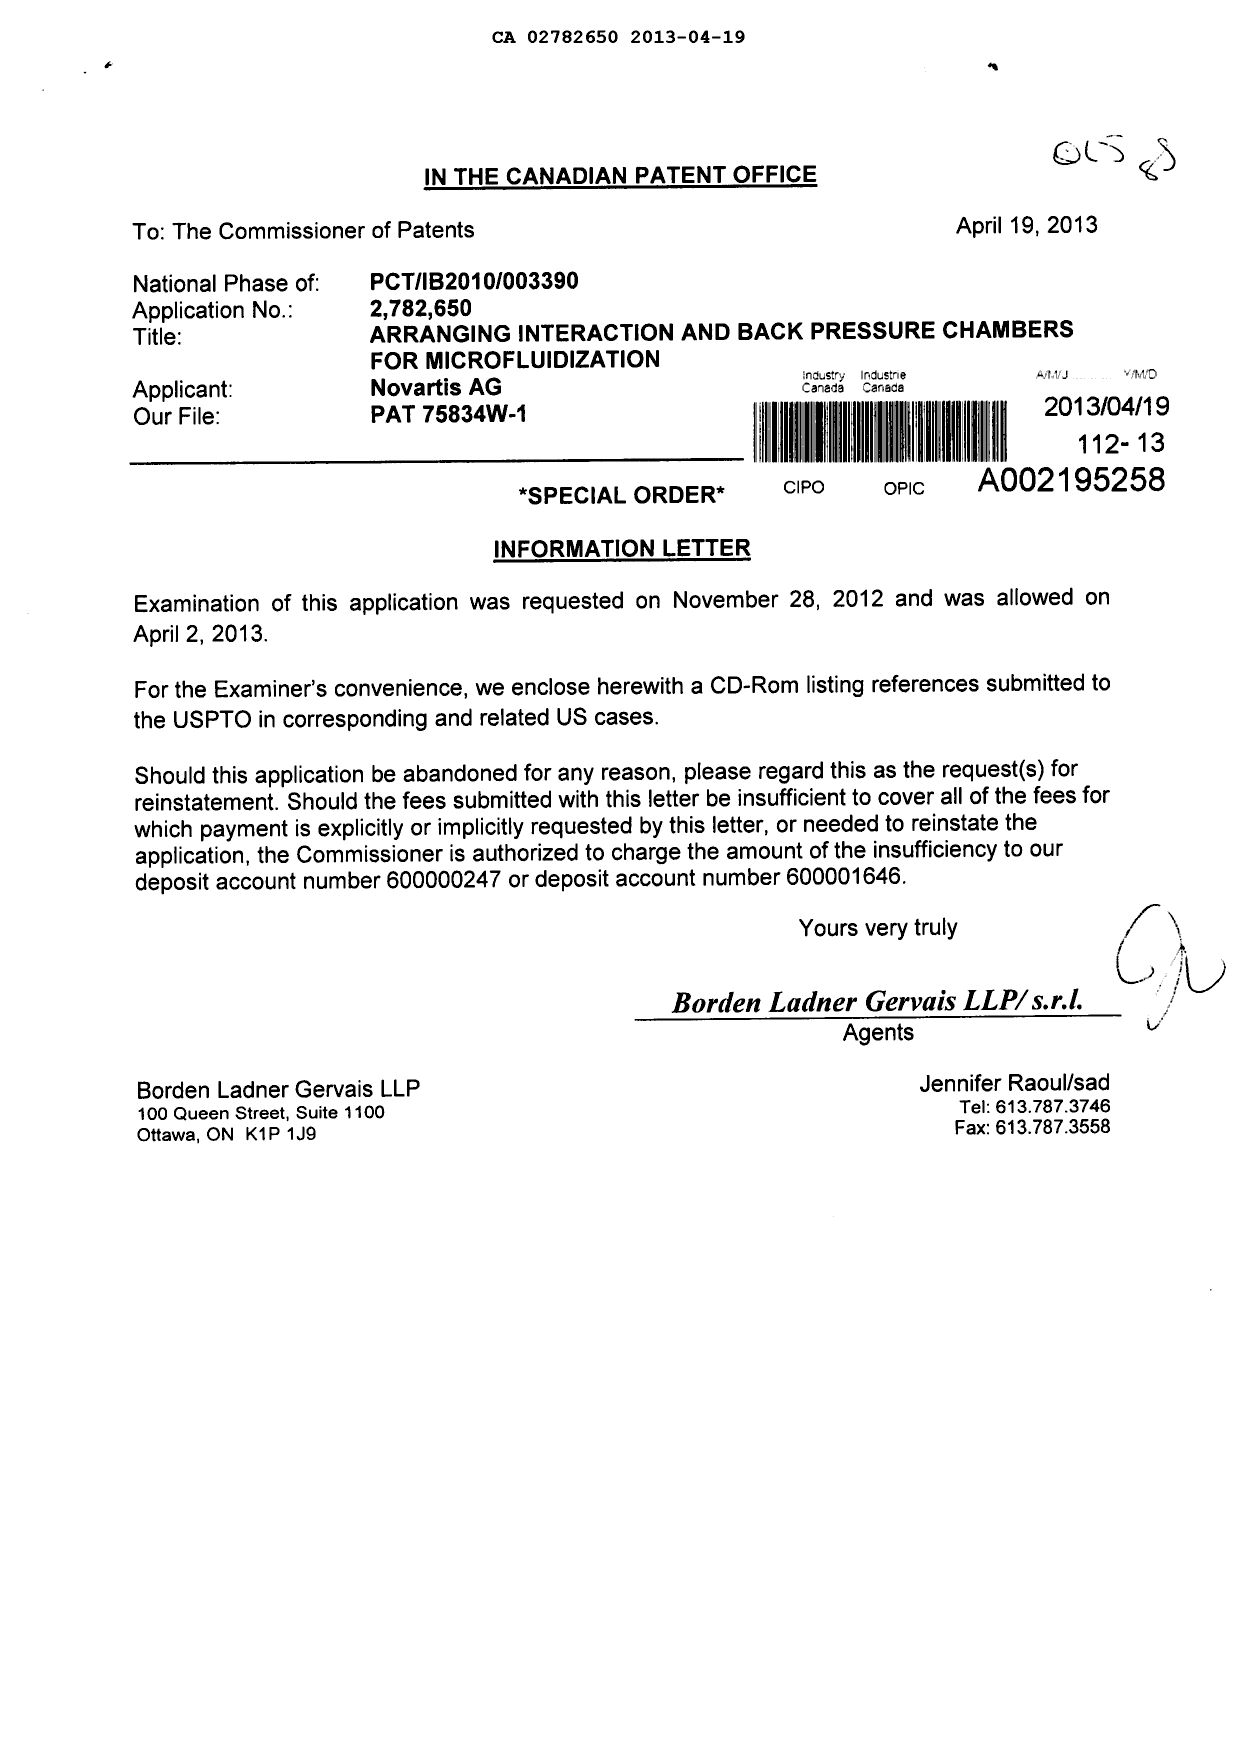 Document de brevet canadien 2782650. Poursuite-Amendment 20121219. Image 1 de 1